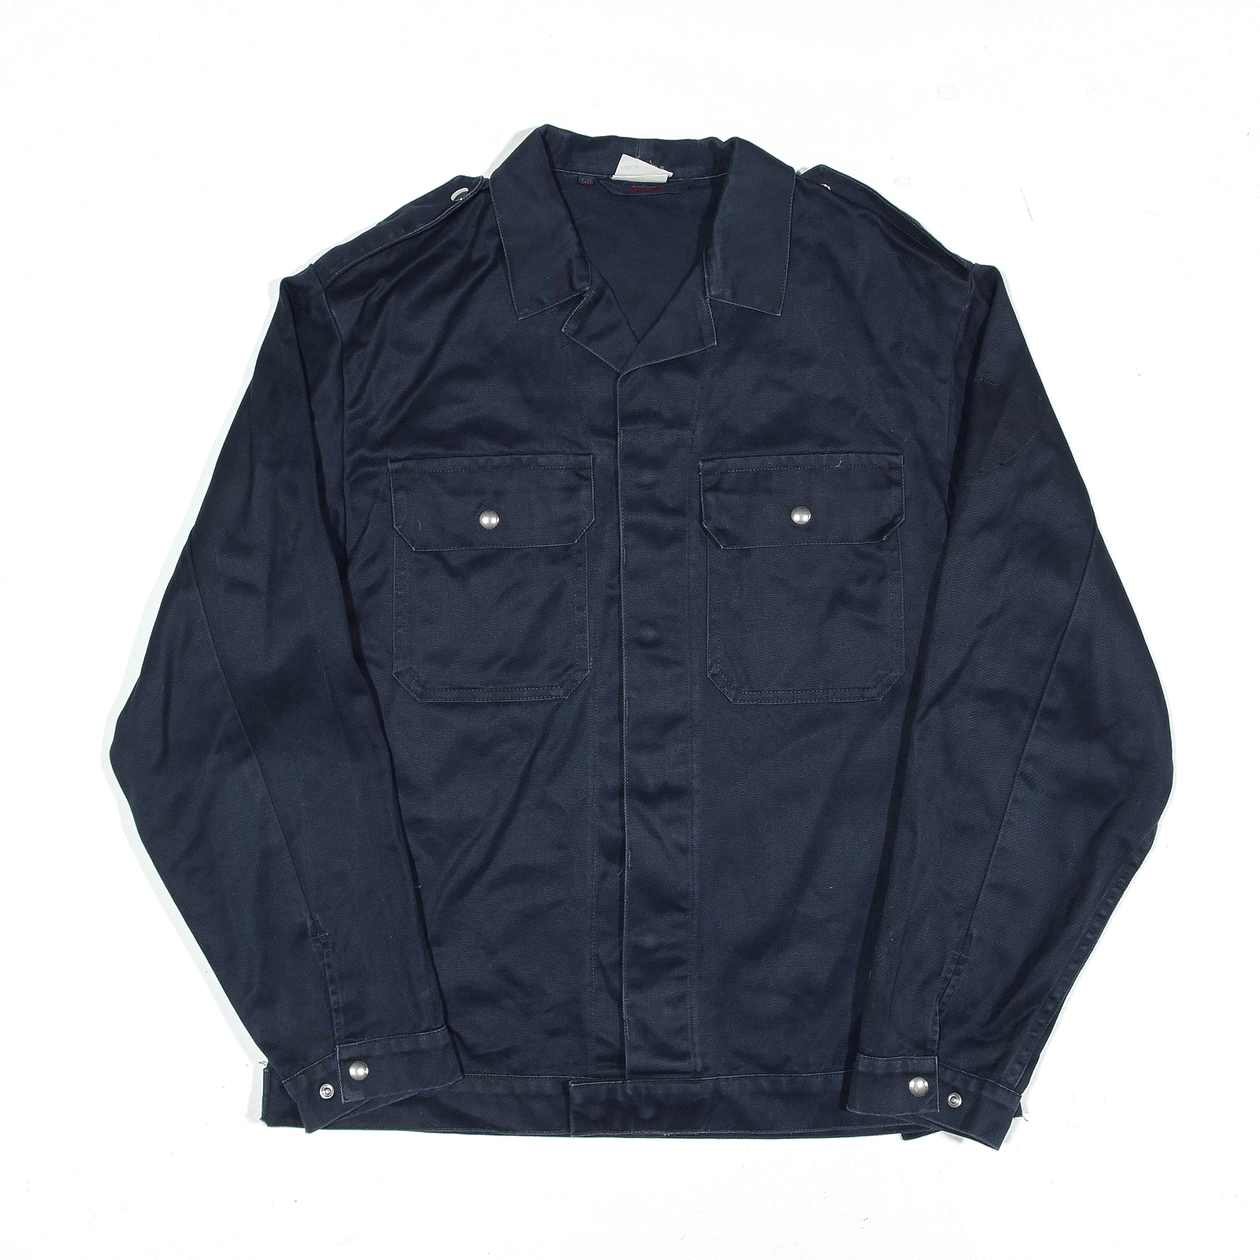 Men's Workwear Denim Chore Jacket - Timberland - Hong Kong